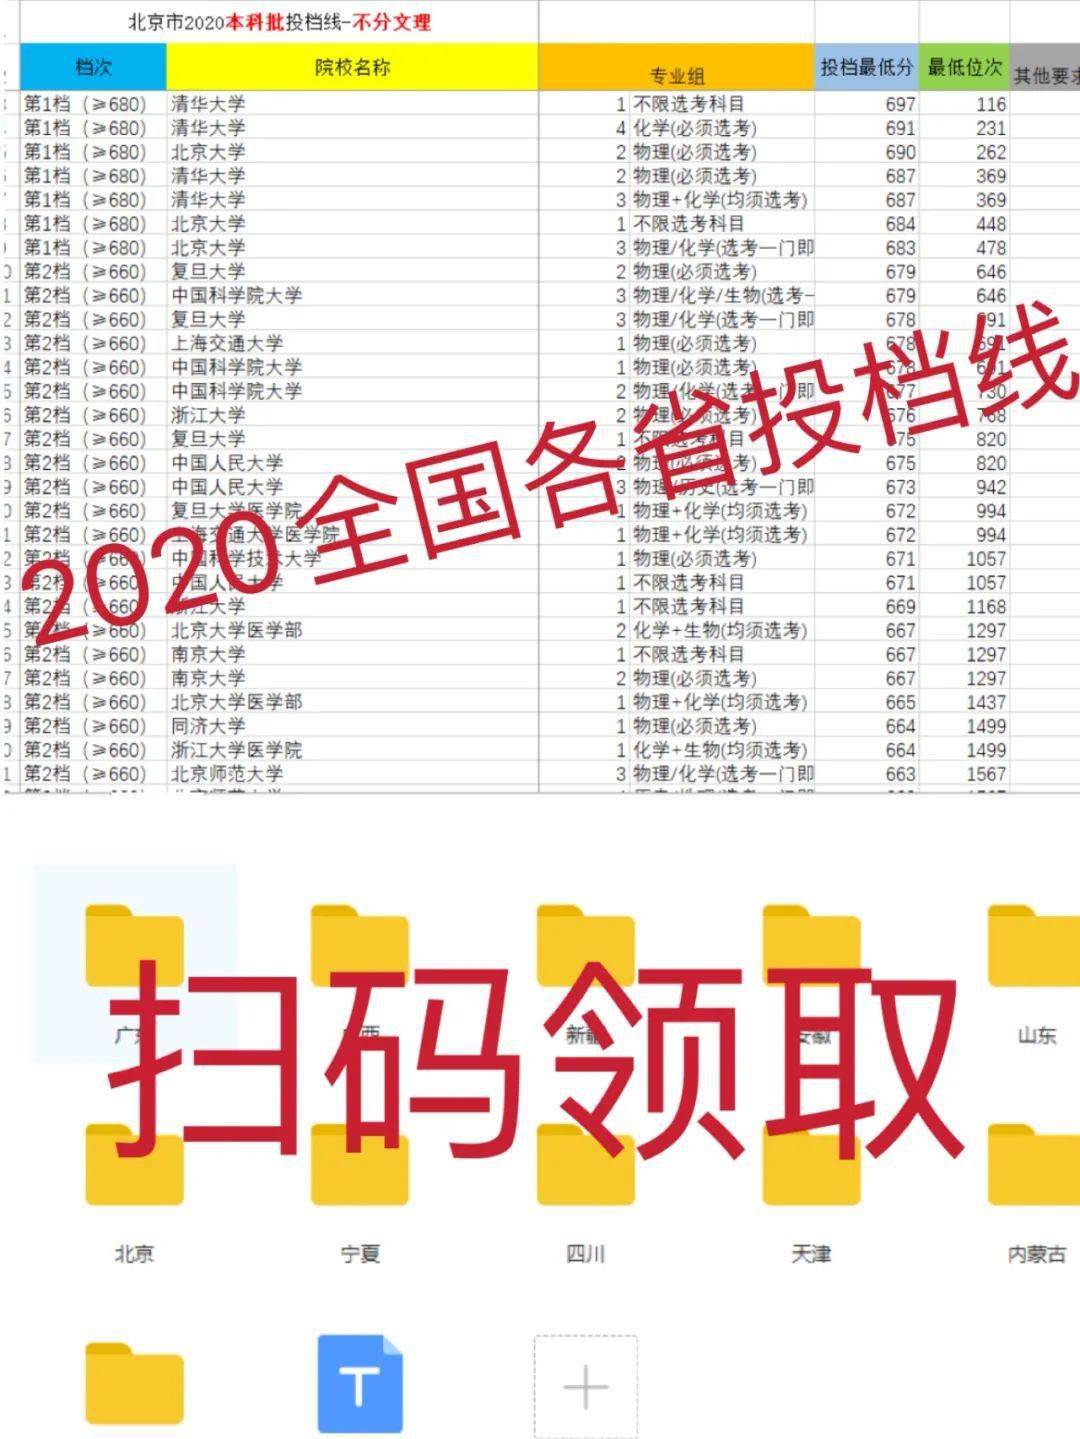 2020大专分数排名_2020年,临床专业排名前10的大学在河南招生的分数及位